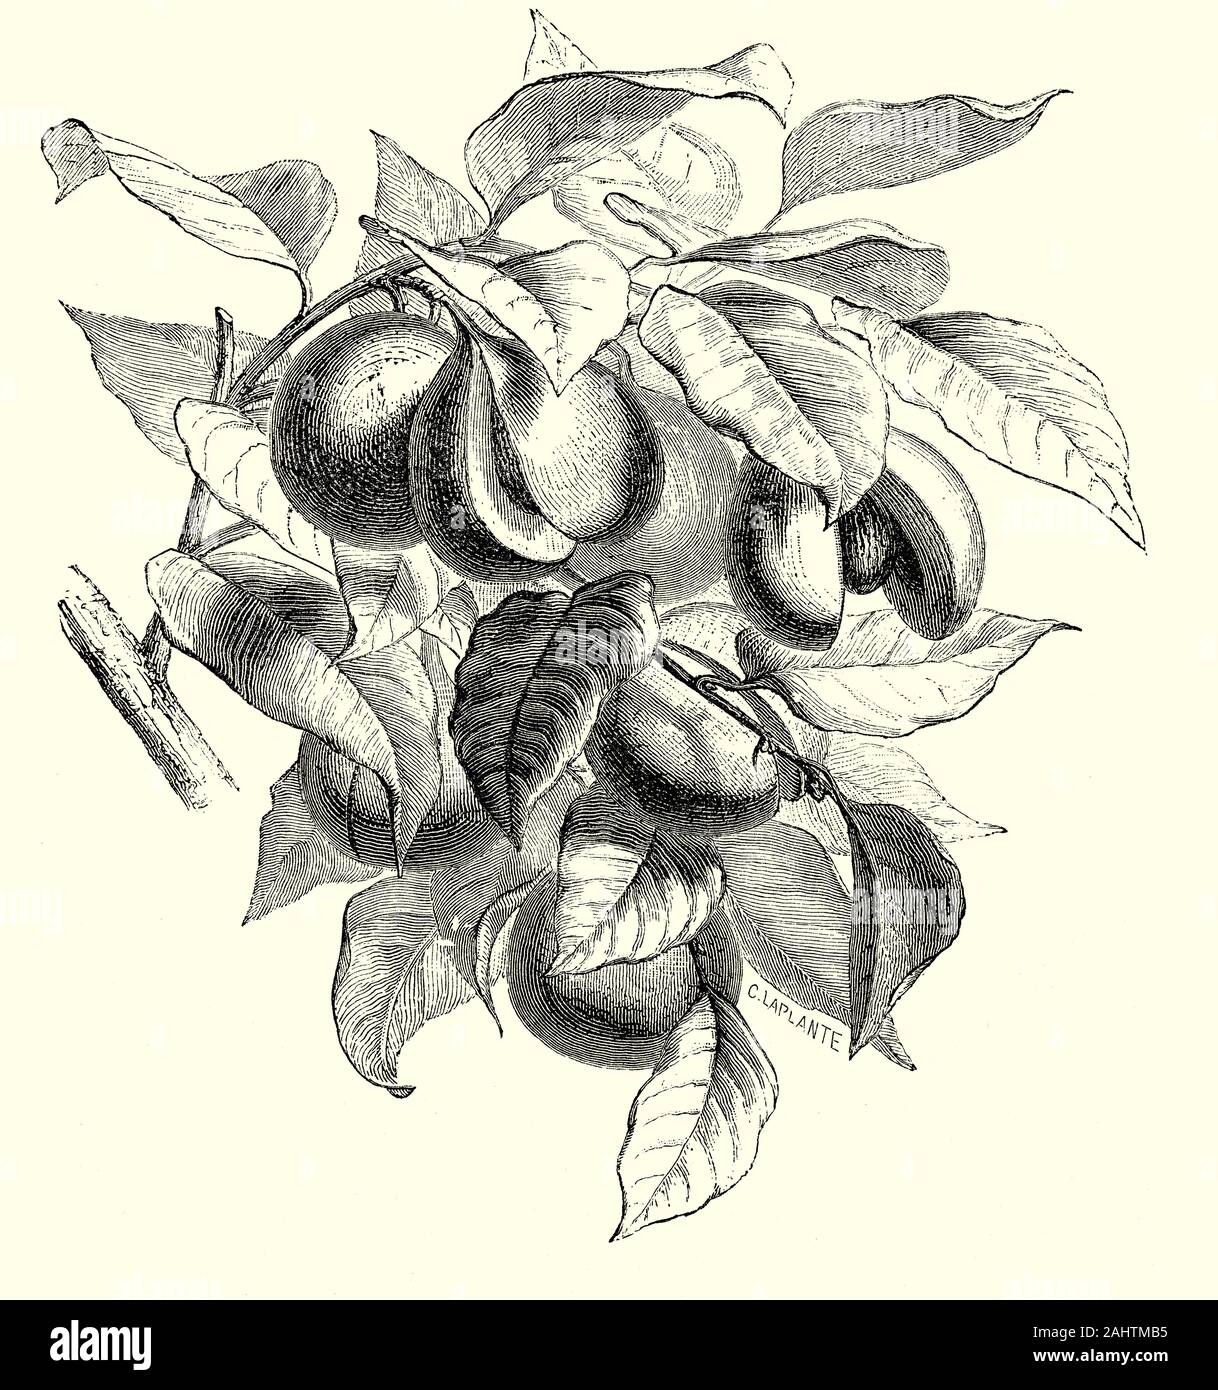 I semi della noce moscata (Myristica moschata), un nativo delle Indie Orientali, è attualmente coltivato in misura limitata nelle Indie Occidentali e America tropicale. Il frutto della copertura esterna è spessa e carnosa, e diventa coriacea e secca come la maturazione. All interno di questo è un colore rossastro o arancione aril, sottile, liscia, e variamente split, che è noto in commercio come macis. Entro il macis e strettamente coperto da un sottile guscio, è il seme del frutto che è la noce moscata di commercio. Noce moscata e macis sono il riscaldamento di spezie, di tipo diffusivo e moderatamente stimolante. Foto Stock